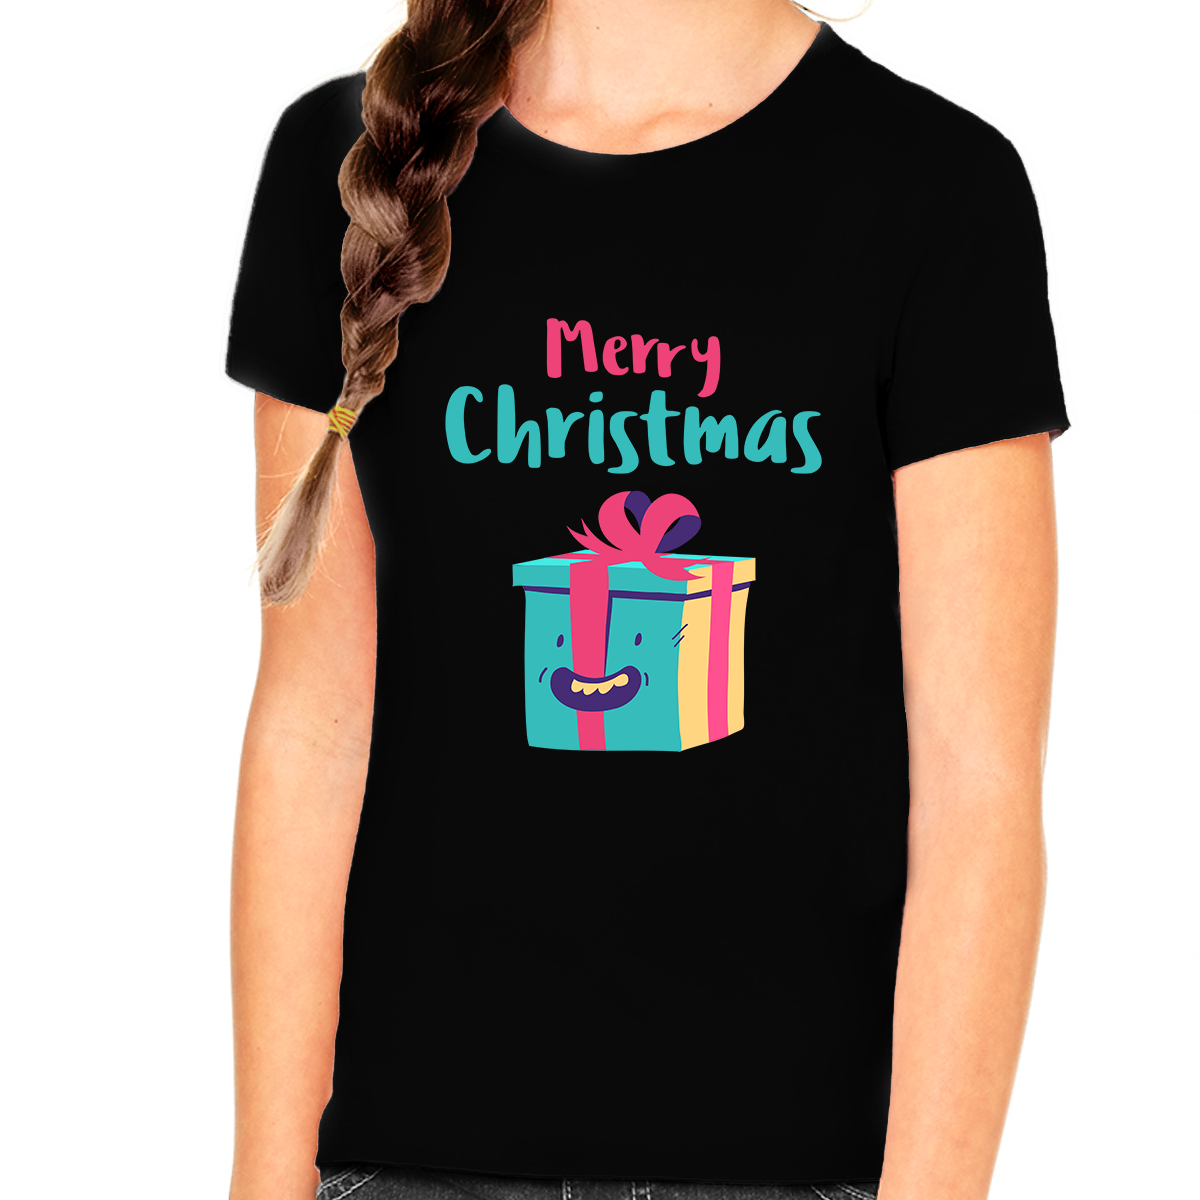 Cute Christmas Gift for Girls Kids Christmas Shirt Cute Christmas TShirts for Girls Funny Christmas Shirt